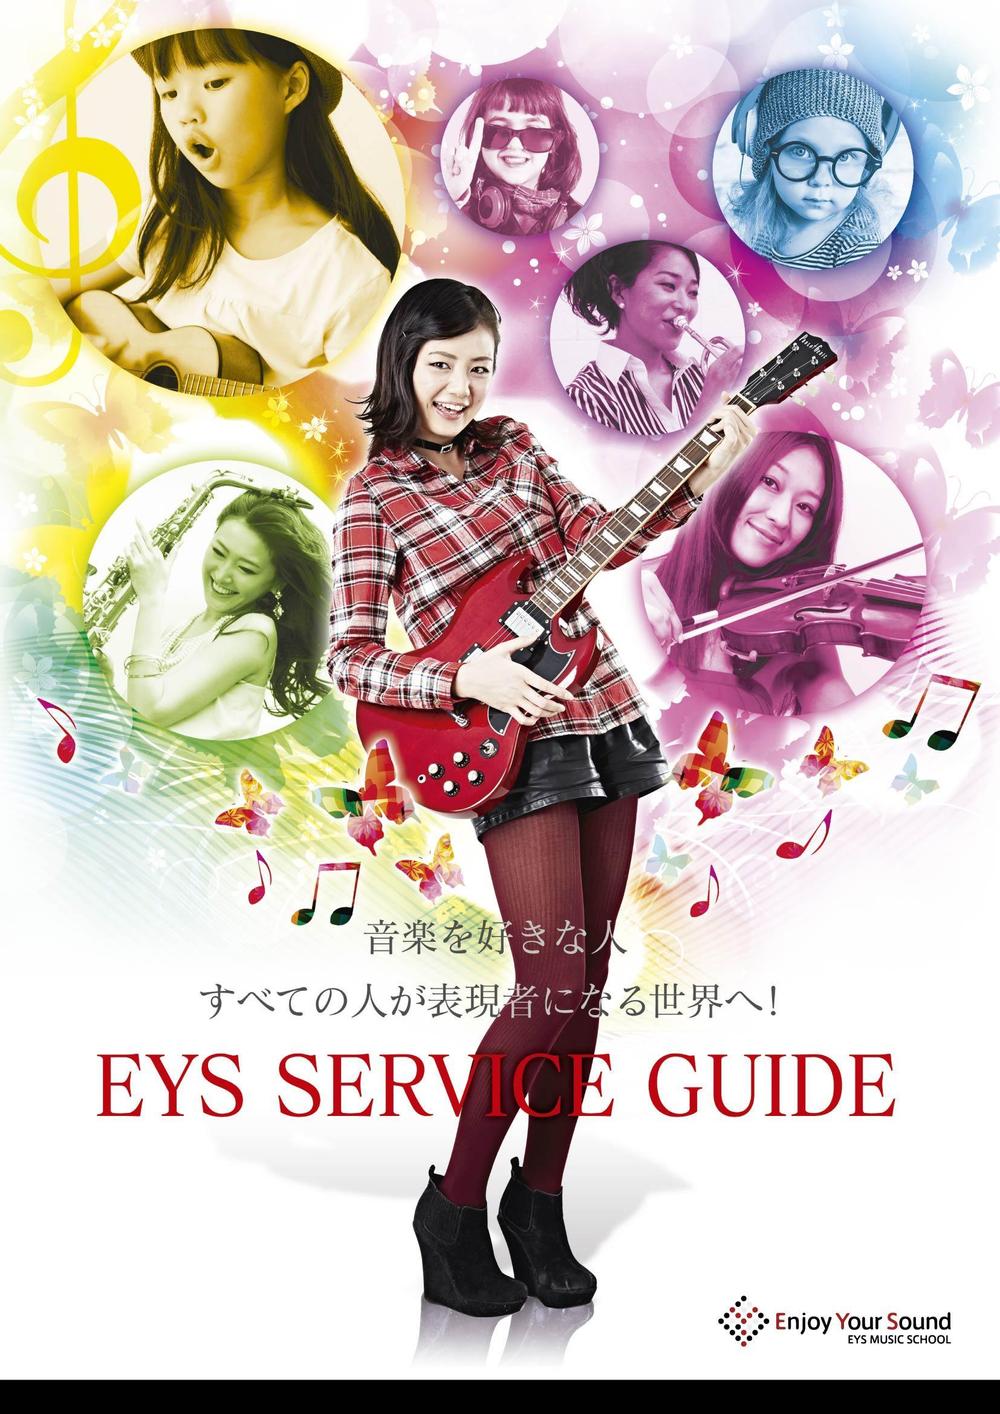 eys service guide_02.jpg